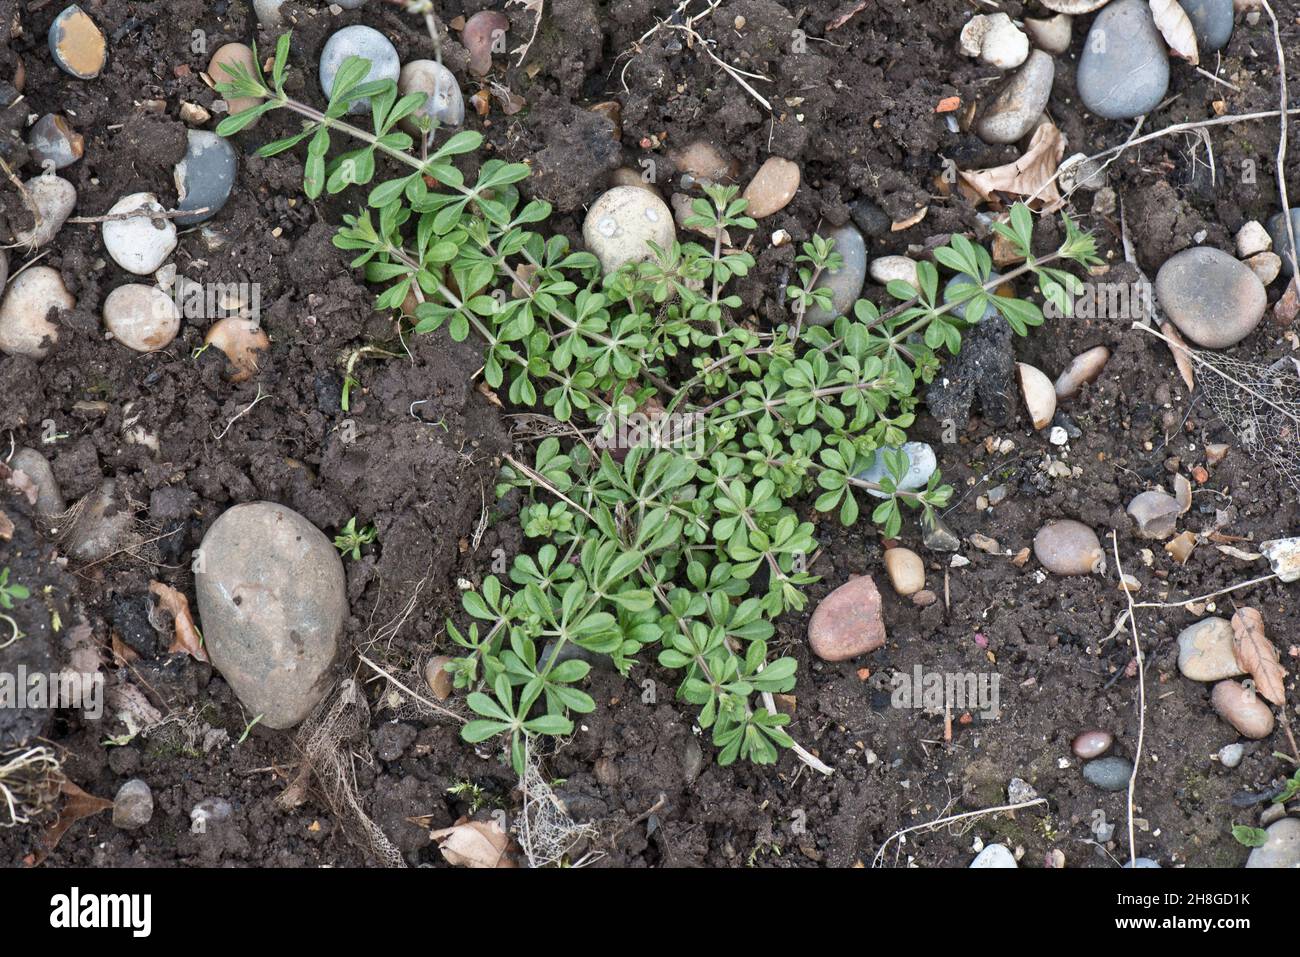 Soil prostrate immagini e fotografie stock ad alta risoluzione - Alamy